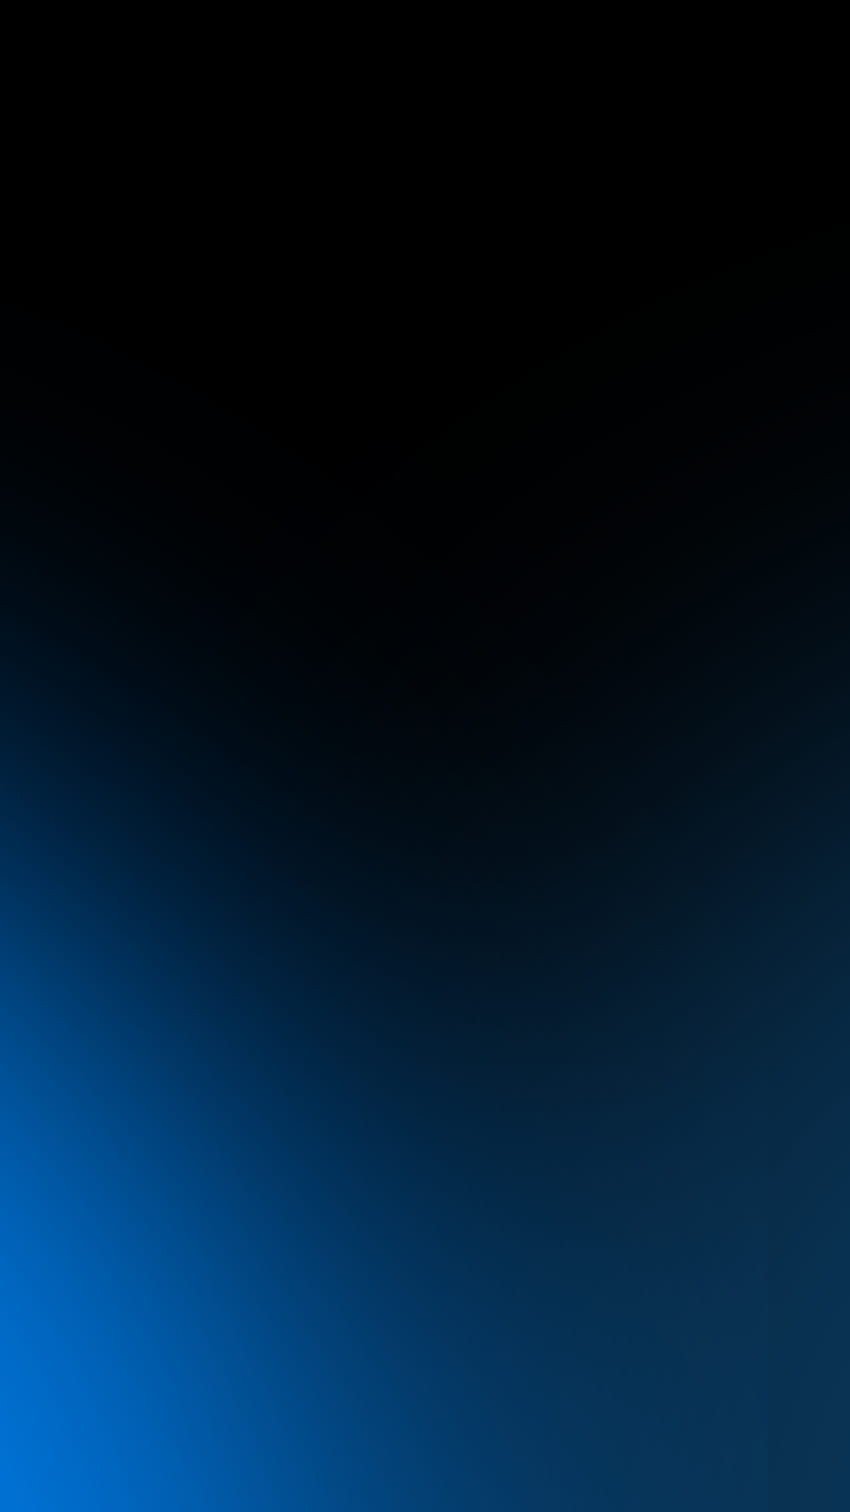 Aquí está mi versión de ese degradado rojo/negro que es tan popular... solo que en azul.: iphone, iphone negro y azul fondo de pantalla del teléfono